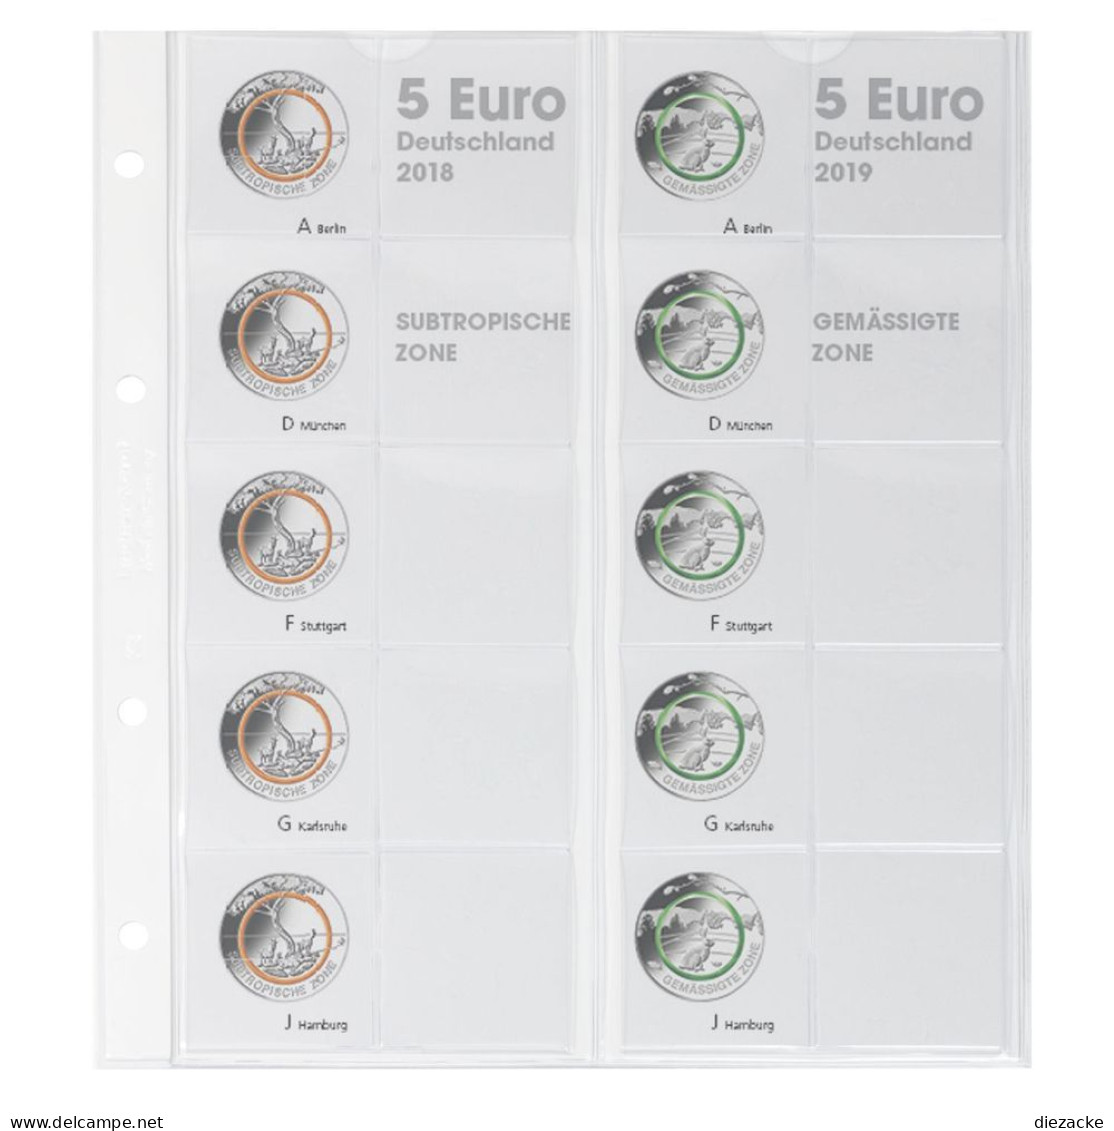 Lindner Vordruckblatt Karat Für 5 Euro-Münzen Polymerring 1119-2 Neu - Supplies And Equipment